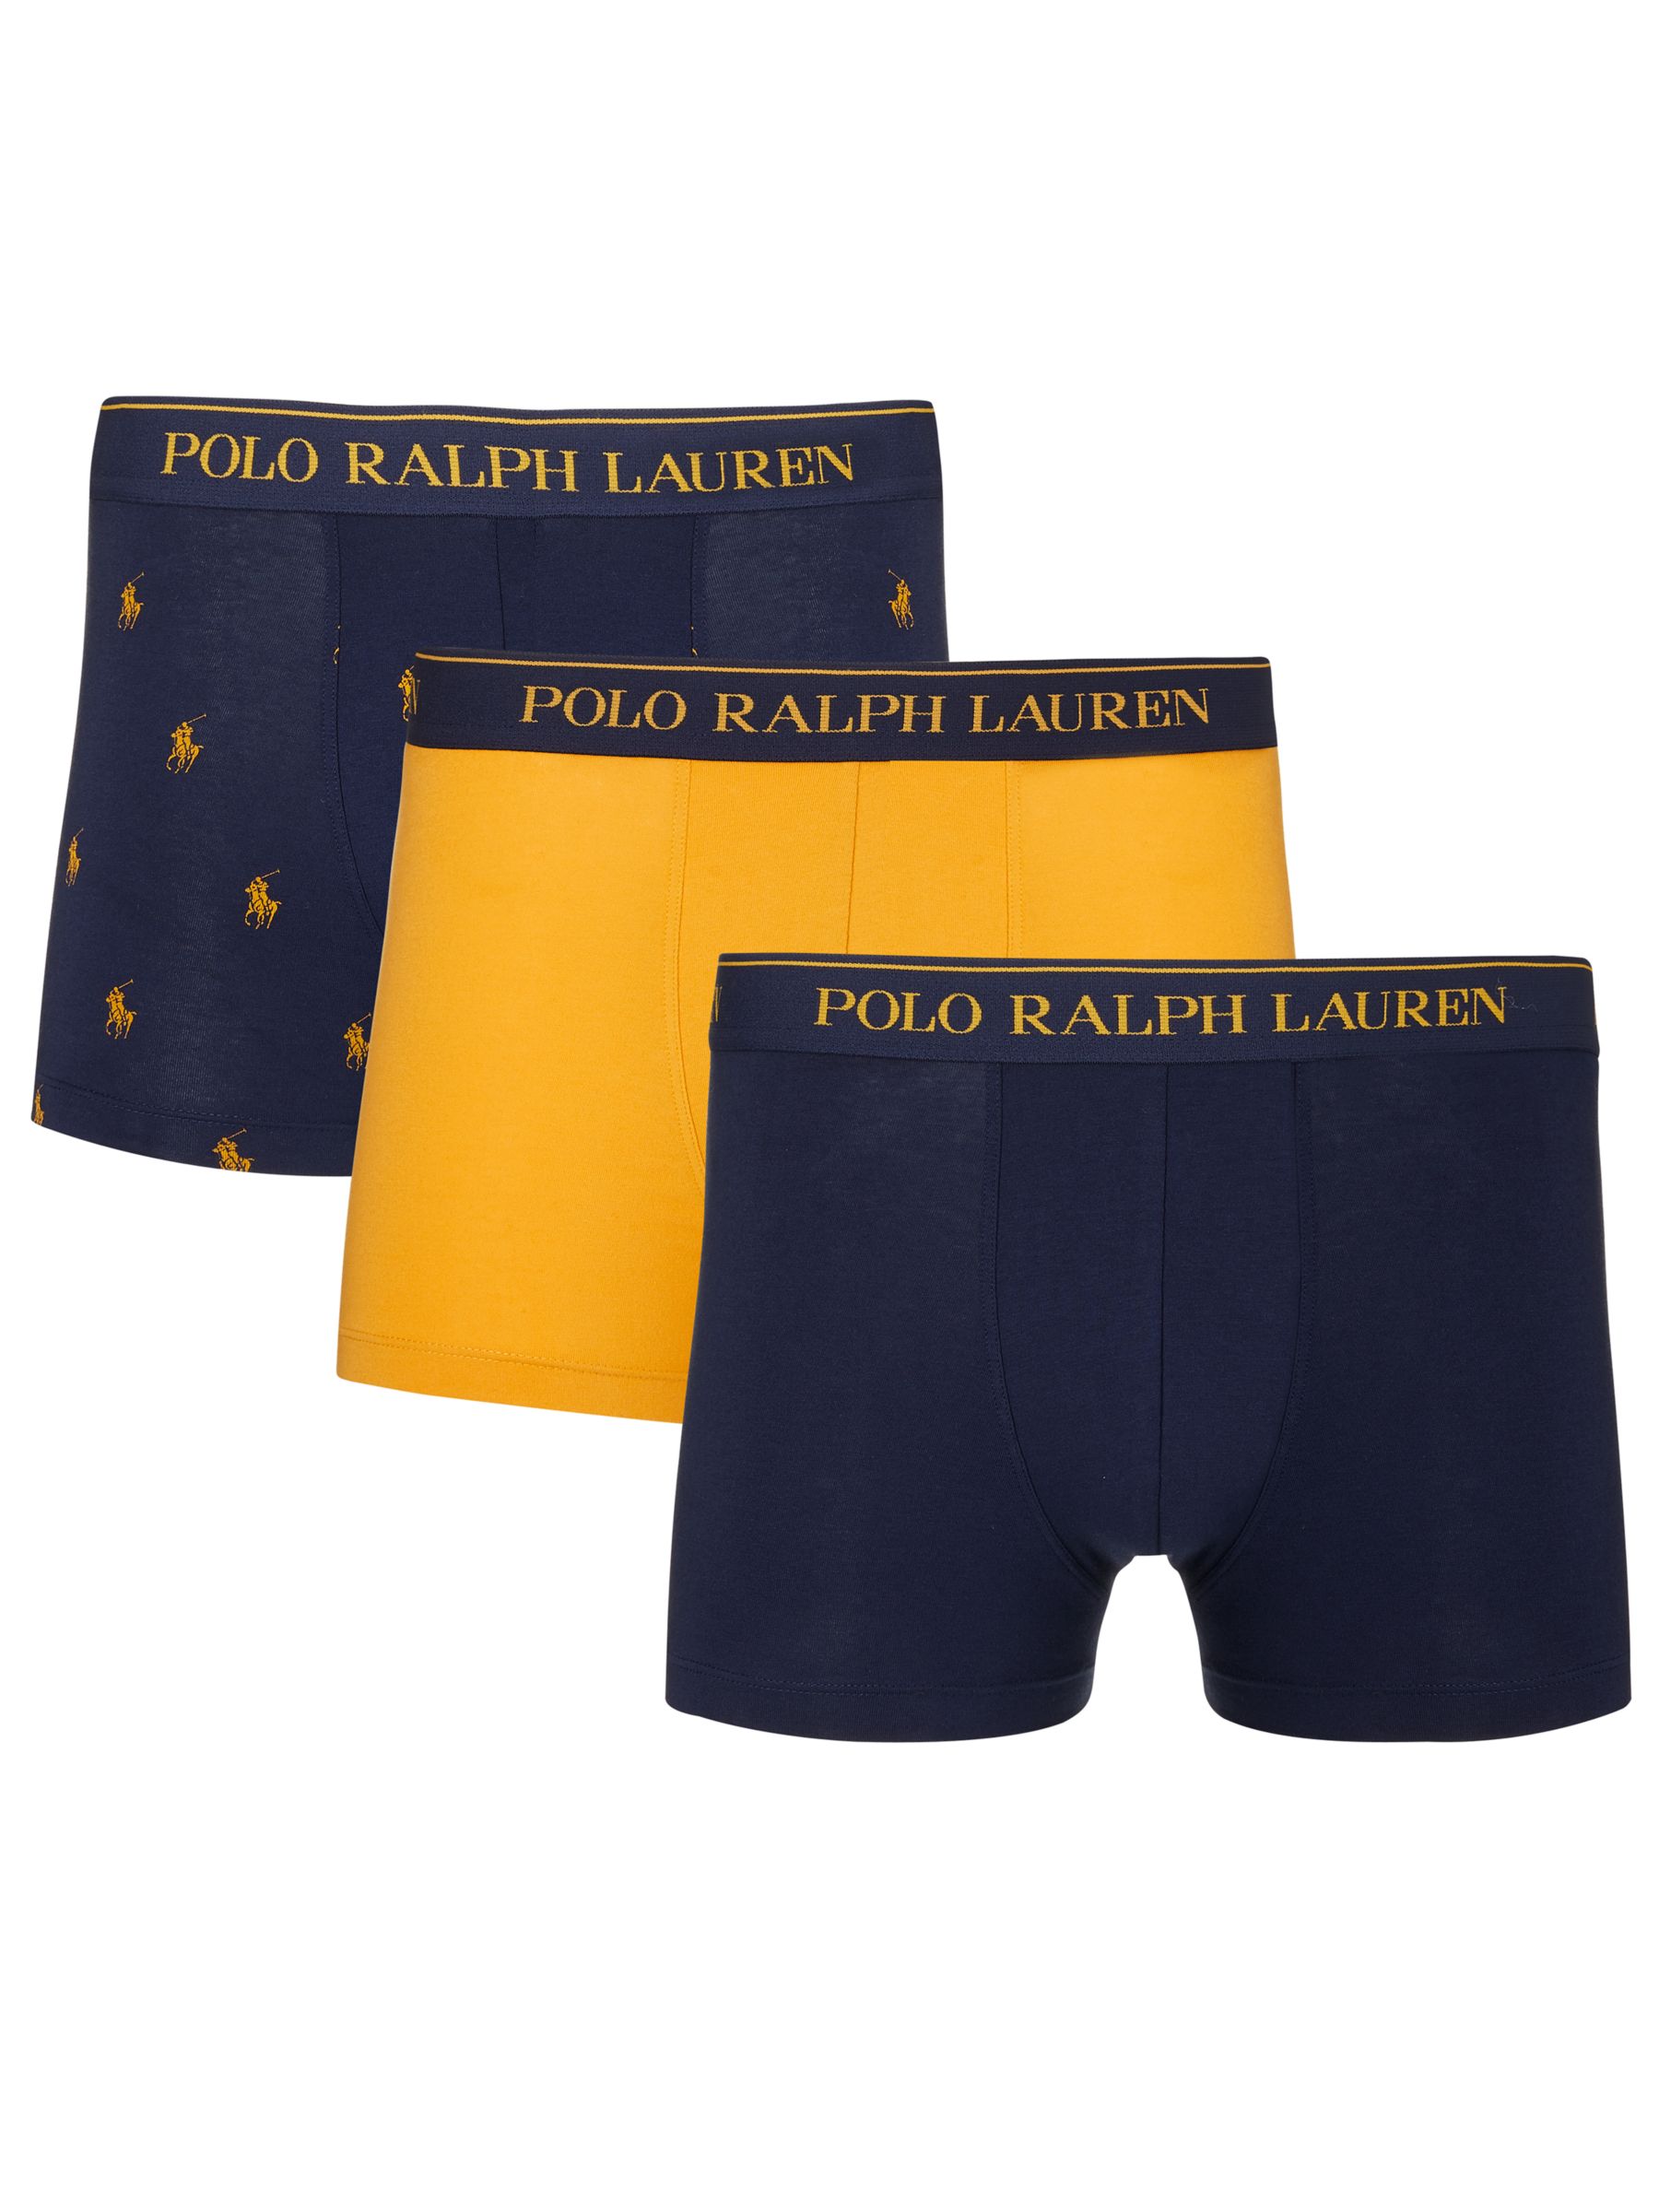 polo ralph lauren trunks 3 pack